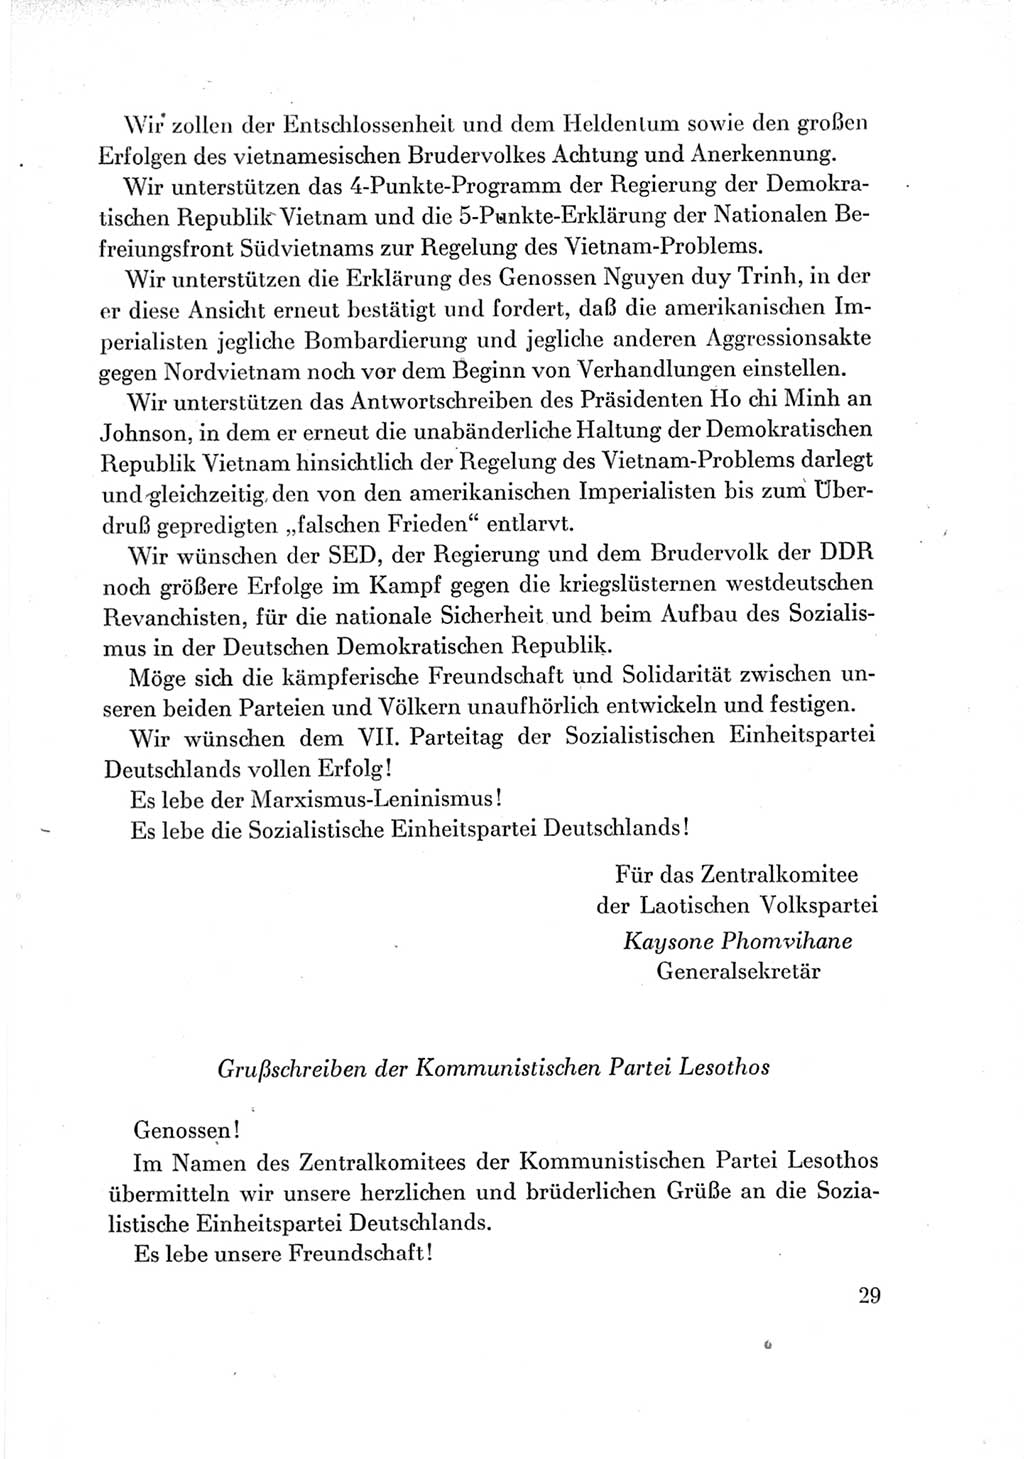 Protokoll der Verhandlungen des Ⅶ. Parteitages der Sozialistischen Einheitspartei Deutschlands (SED) [Deutsche Demokratische Republik (DDR)] 1967, Band Ⅲ, Seite 29 (Prot. Verh. Ⅶ. PT SED DDR 1967, Bd. Ⅲ, S. 29)